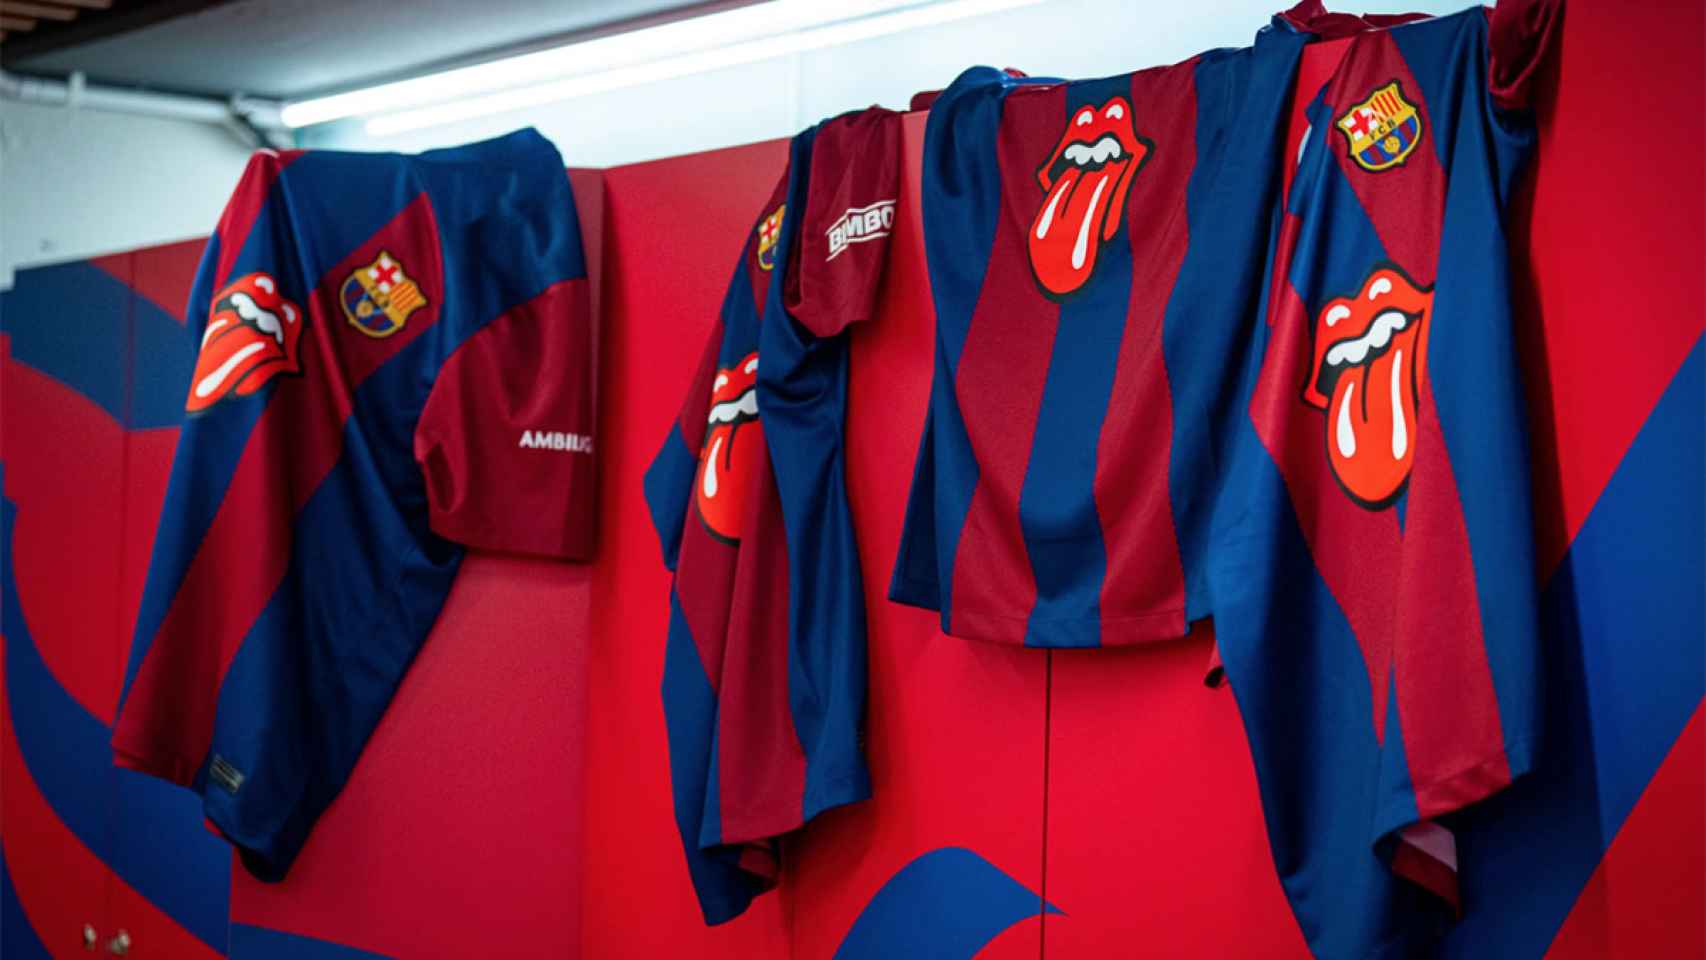 Camisetas oficiales del FC Barcelona para el clásico, con el logotipo de los Rolling Stones